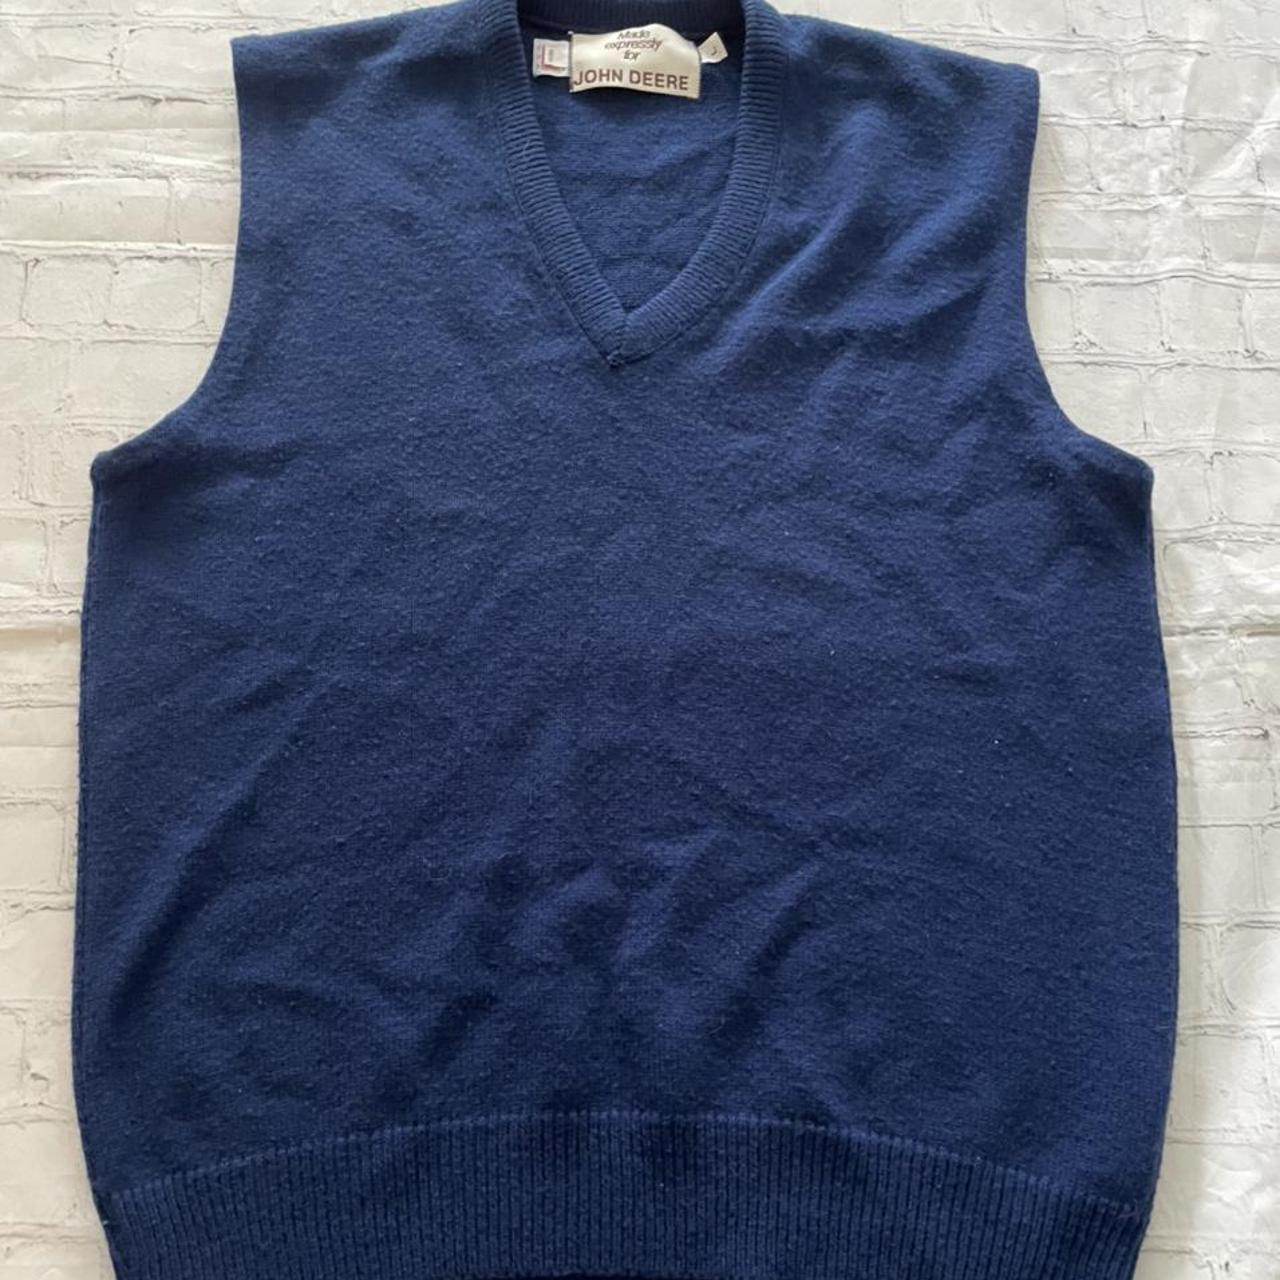 John Deere Blue Sleeveless Sweater Vest sz LG - Made... - Depop